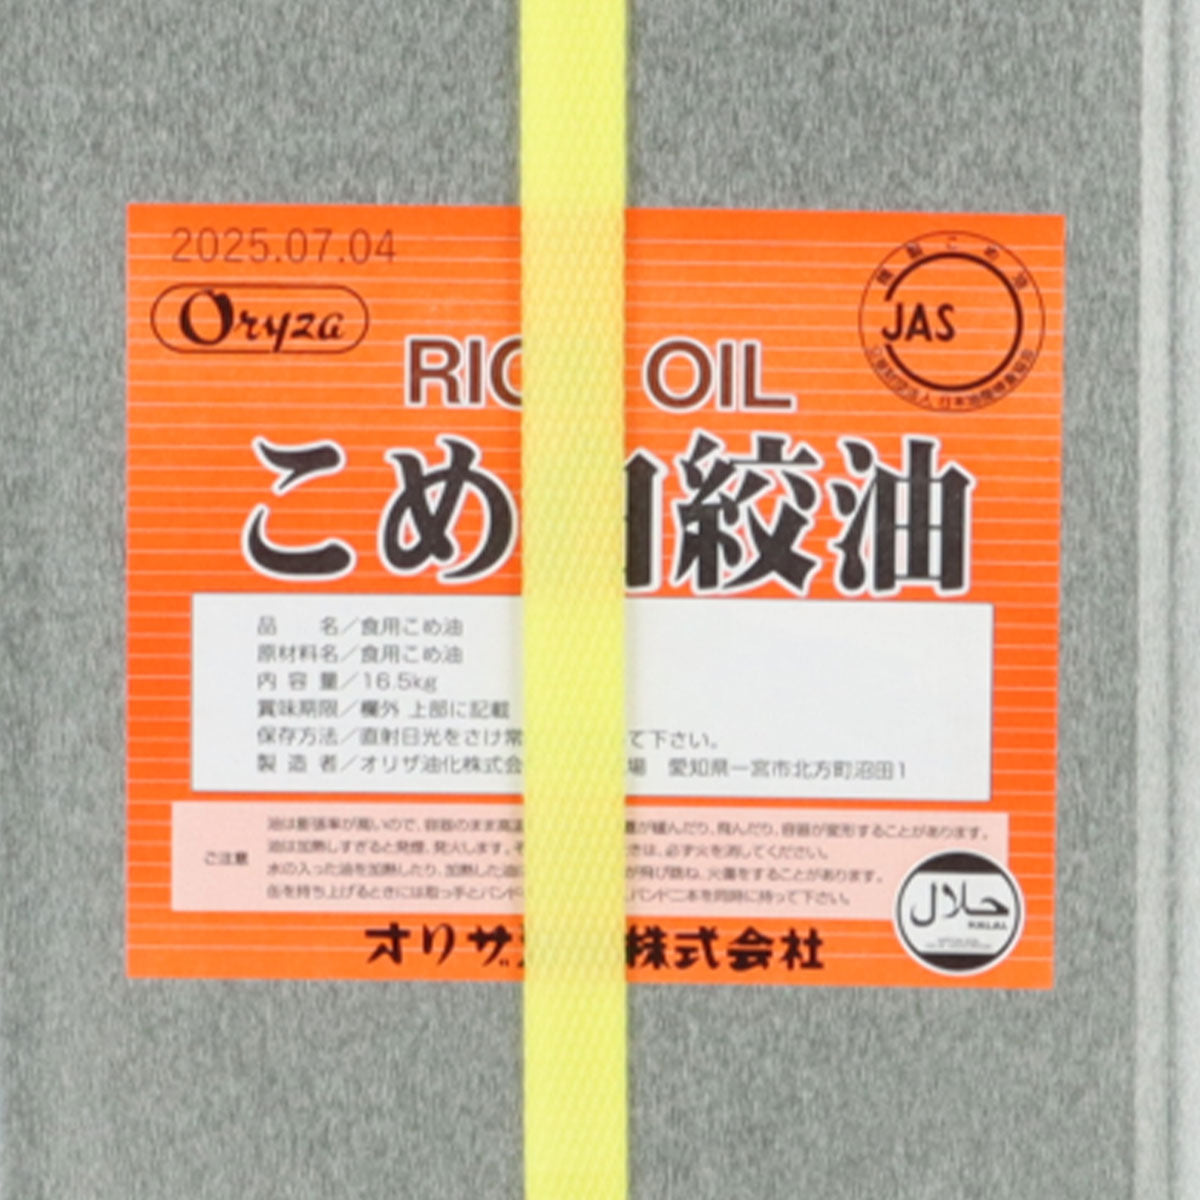 こめ白絞油（しらしめゆ） 米油 こめ油 一斗缶（16.5kg）ハラル認証取得